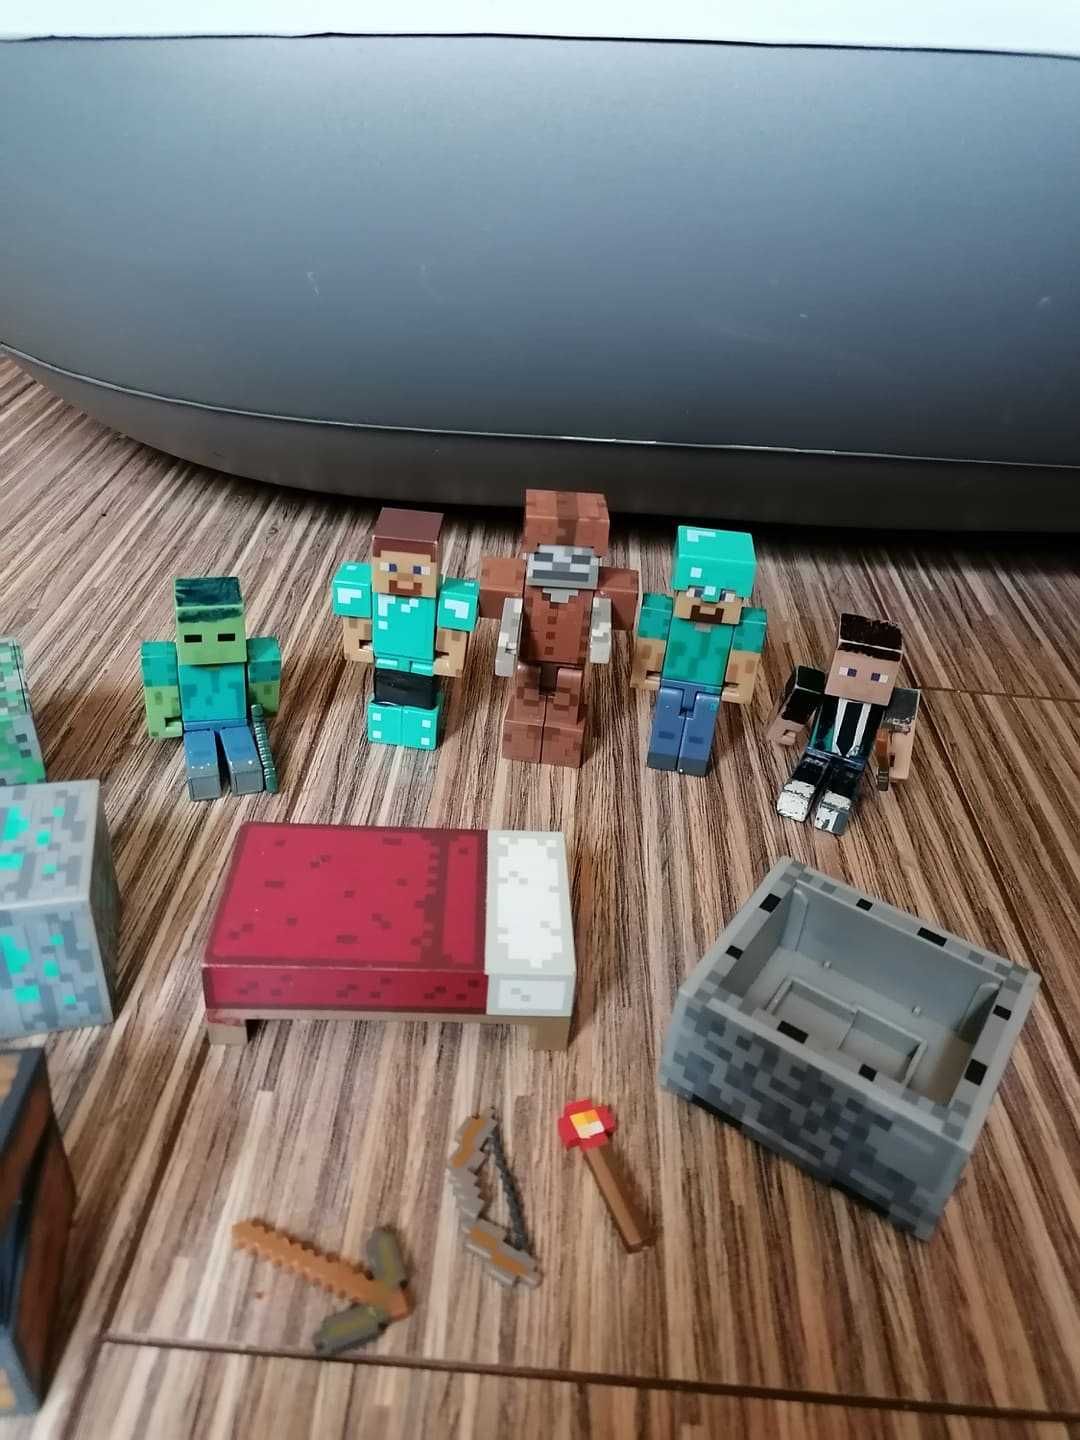 Oryginalne figurki Minecraft wraz z akcesoriami 16 sztuk